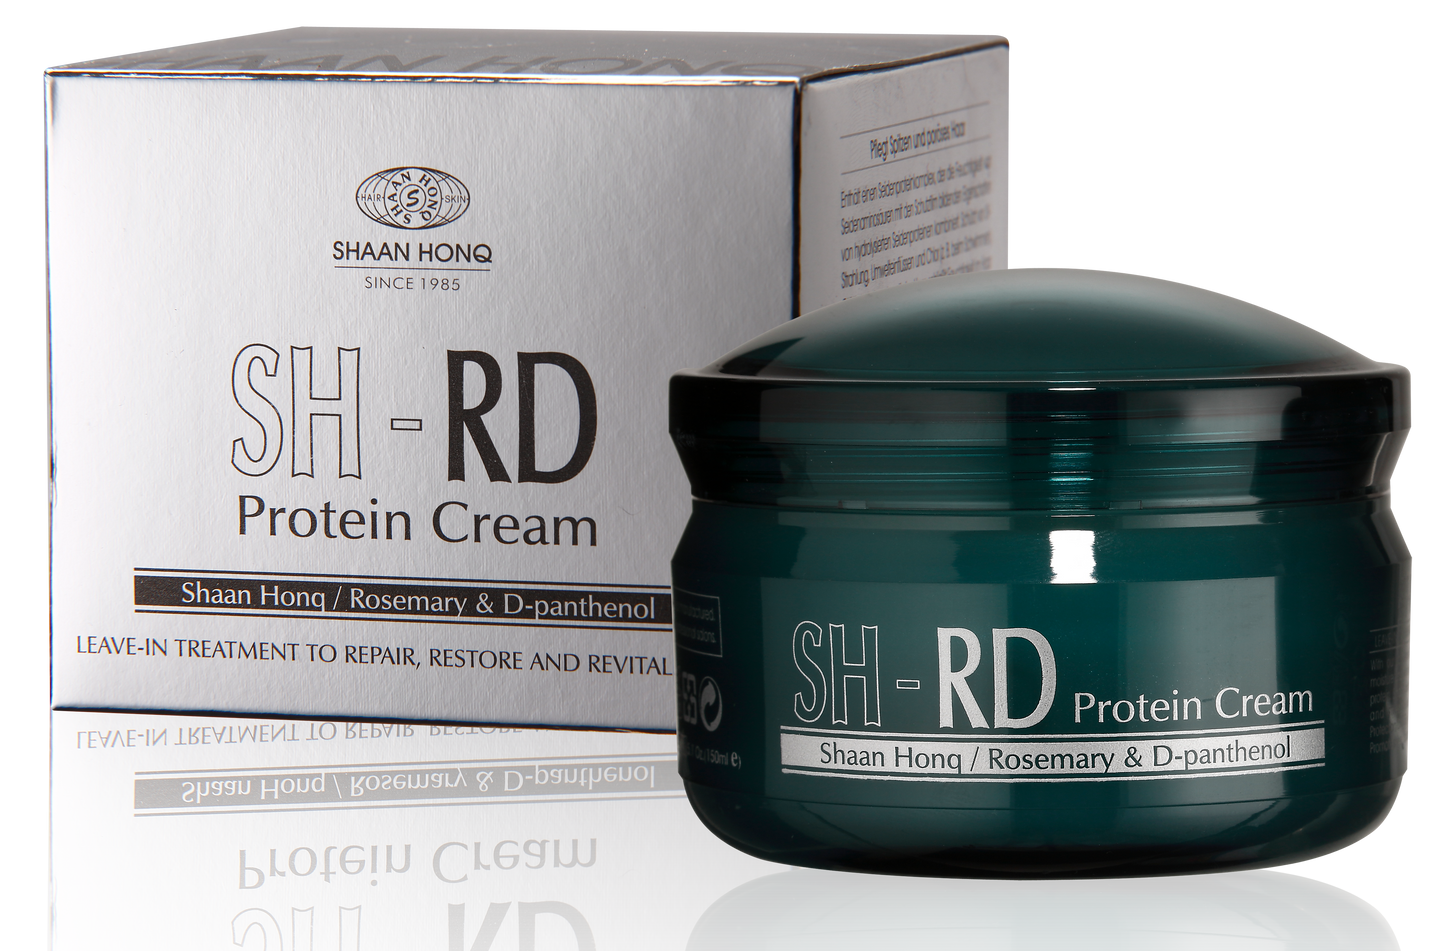 SH-RD Protein Cream (1.69oz/50ml)